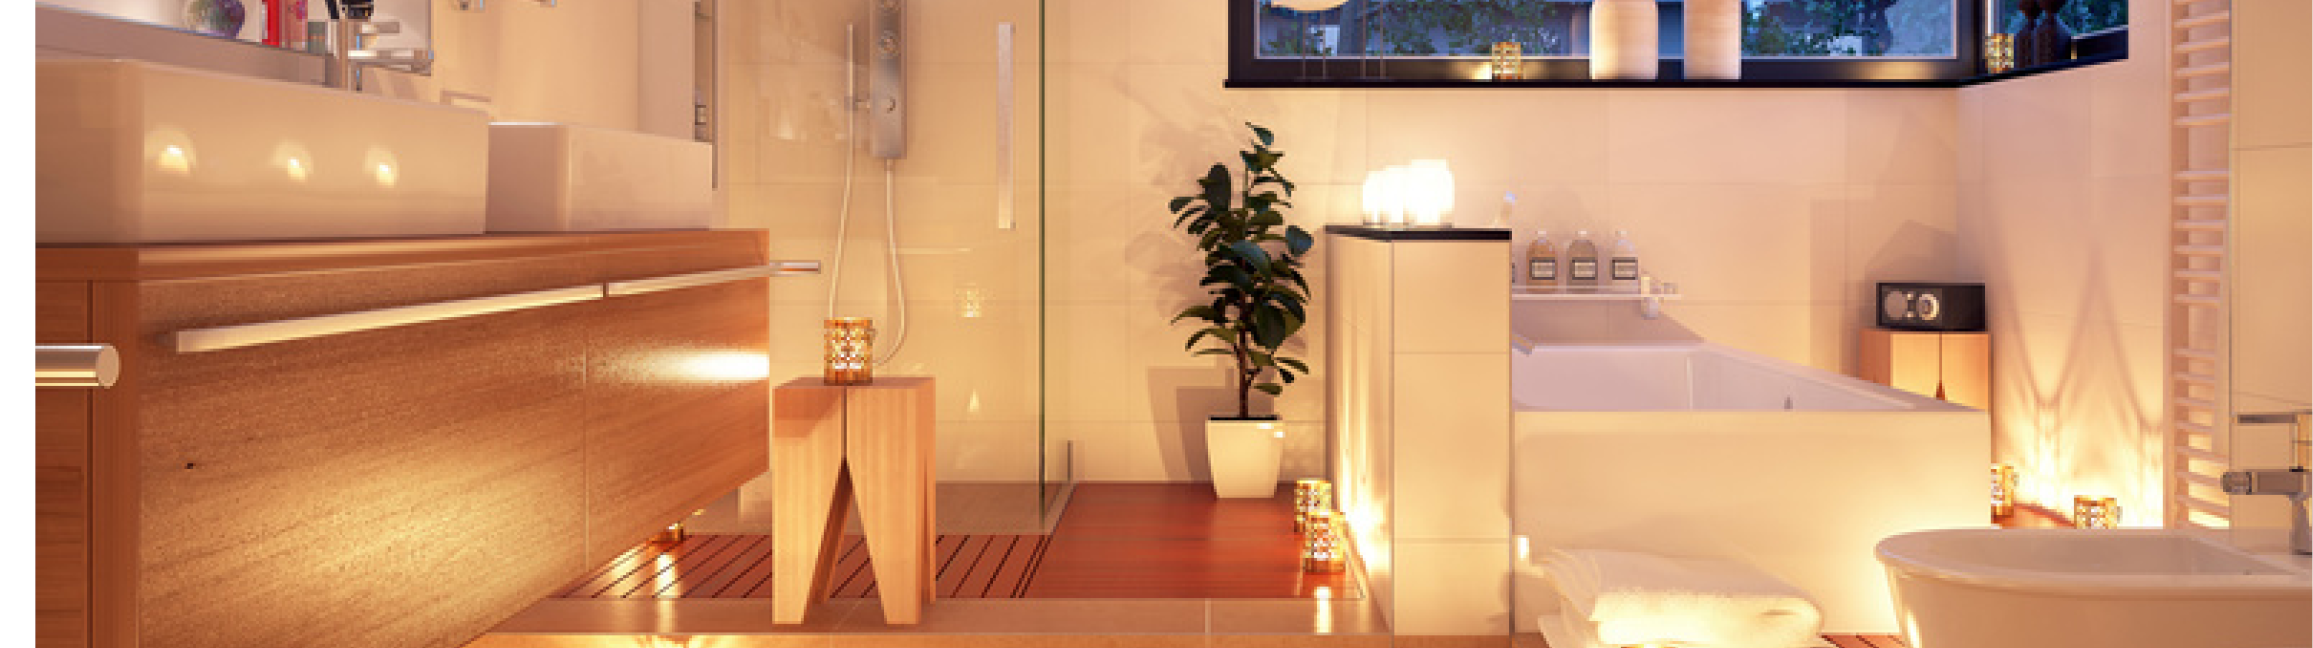 Améliorer l'éclairage de votre salle de bain pour une ambiance agréable